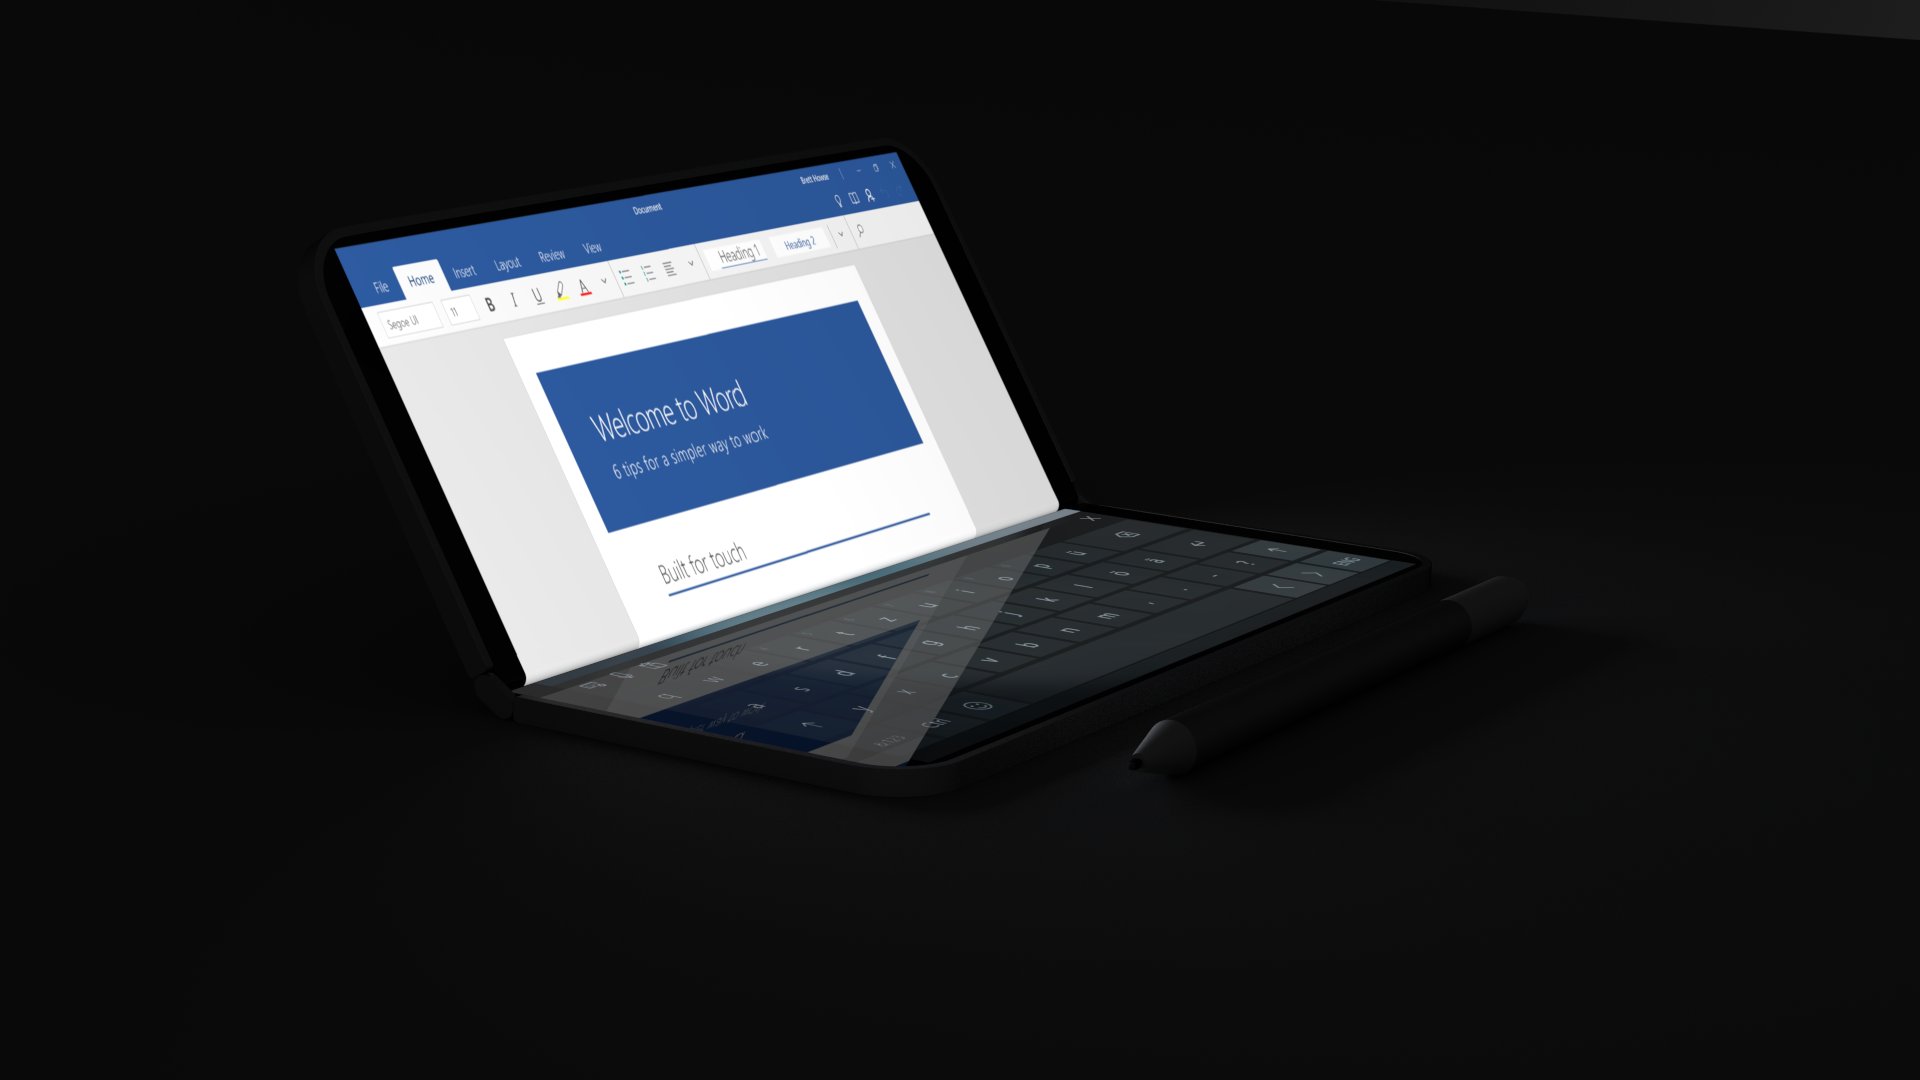 Мифический Surface Phone от Microsoft получил складной экран и всплывающий режим взгляда